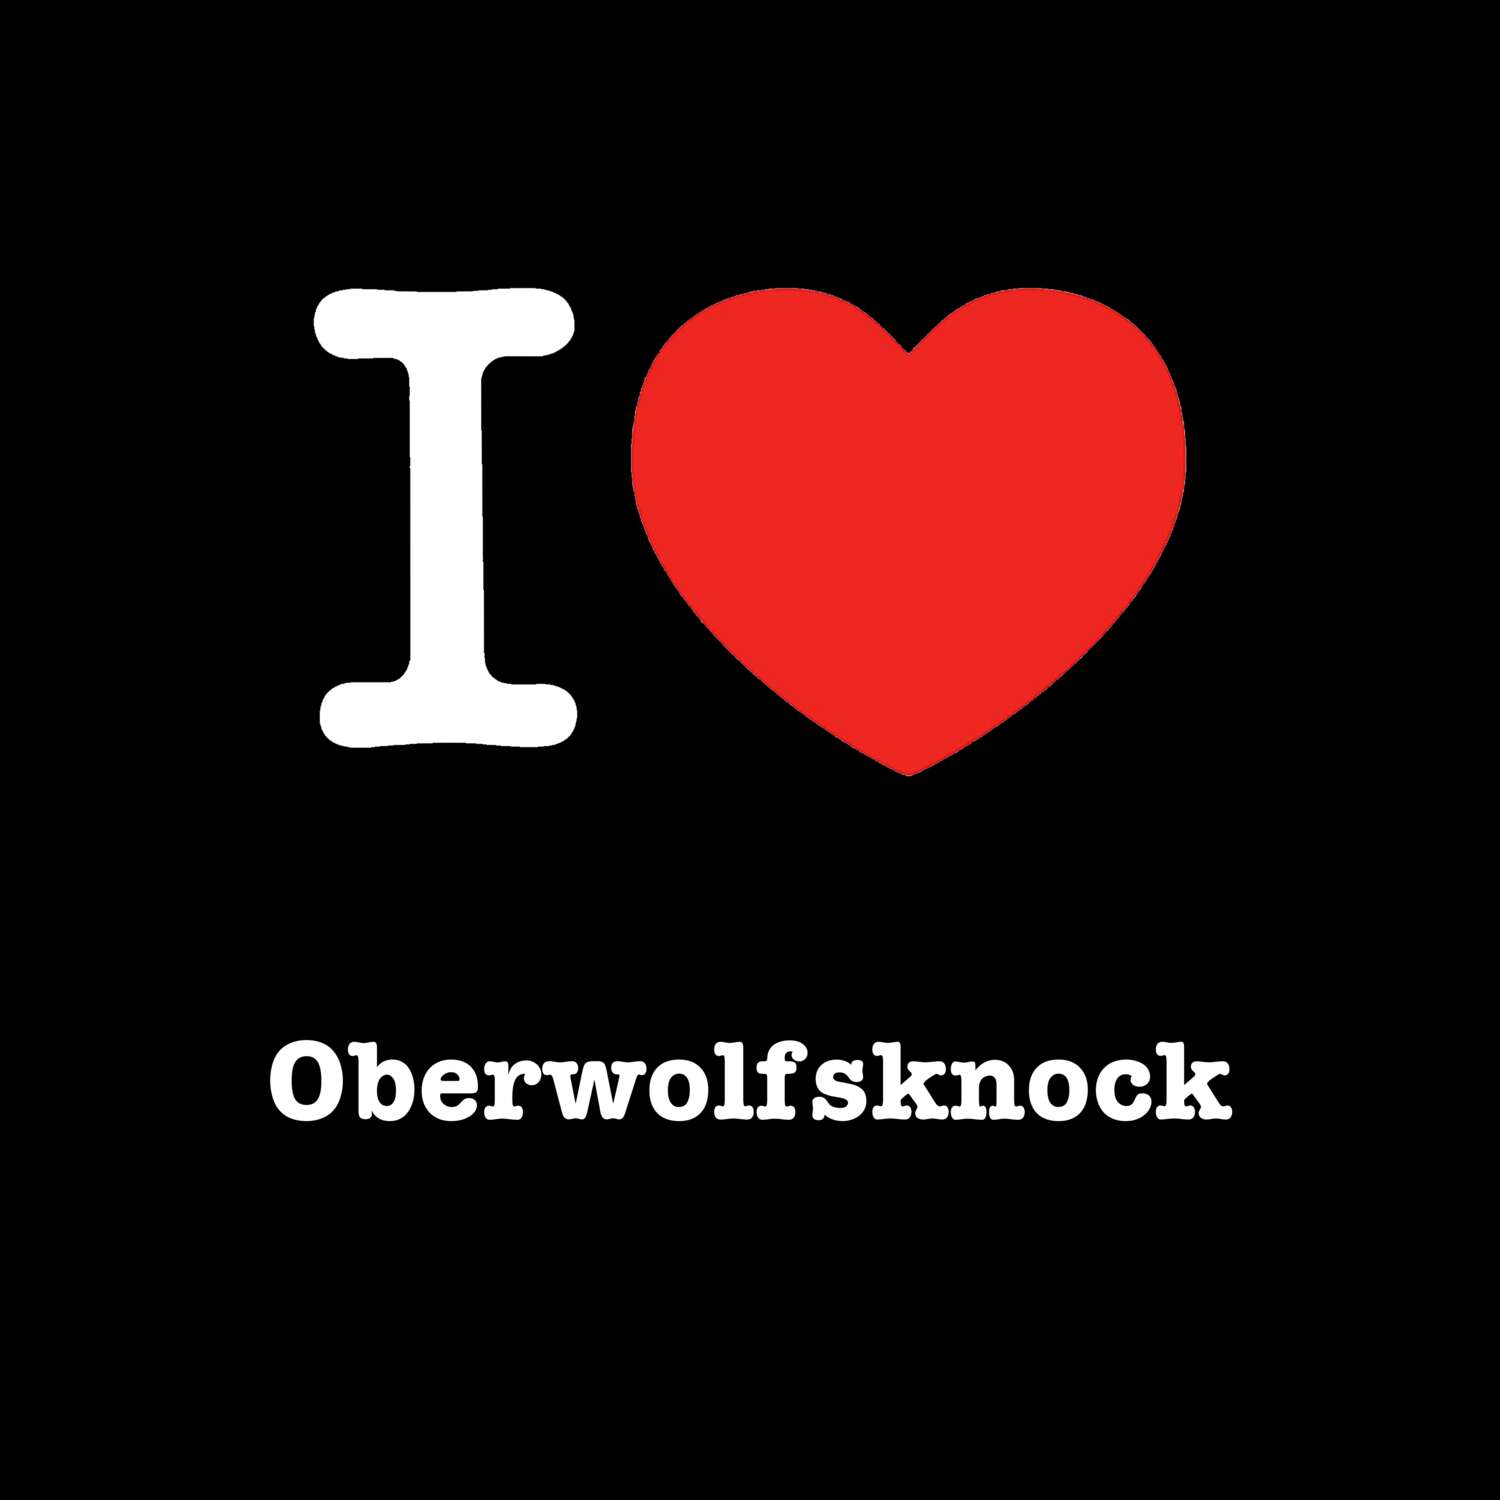 Oberwolfsknock T-Shirt »I love«